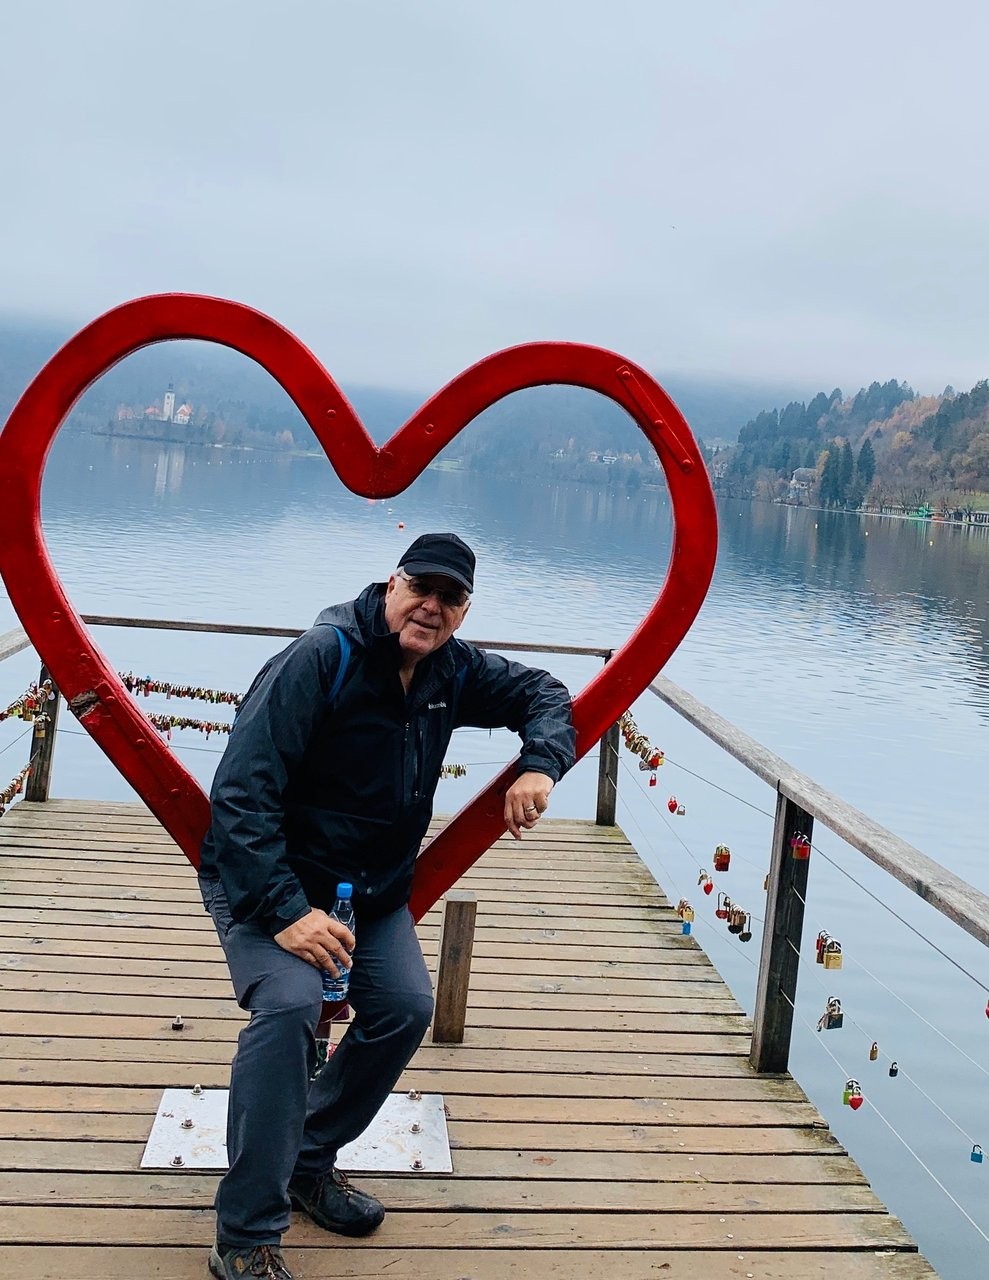 Trái tim của Bled: Trái Tim của Bled là một biểu tượng vô giá của thành phố Bled - Slovenia, với vẻ đẹp lãng mạn và thần thoại tuyệt vời. Bức ảnh sẽ giúp bạn thấy được sự huyền bí, kỳ quặc của trái tim được tạo ra từ đá vôi trắng mịn màng và nằm giữa một hồ nước rực rỡ ánh sáng tự nhiên. Hãy ngắm nhìn bức ảnh đẹp này và cảm nhận sự lãng mạn của Trái Tim Bled.